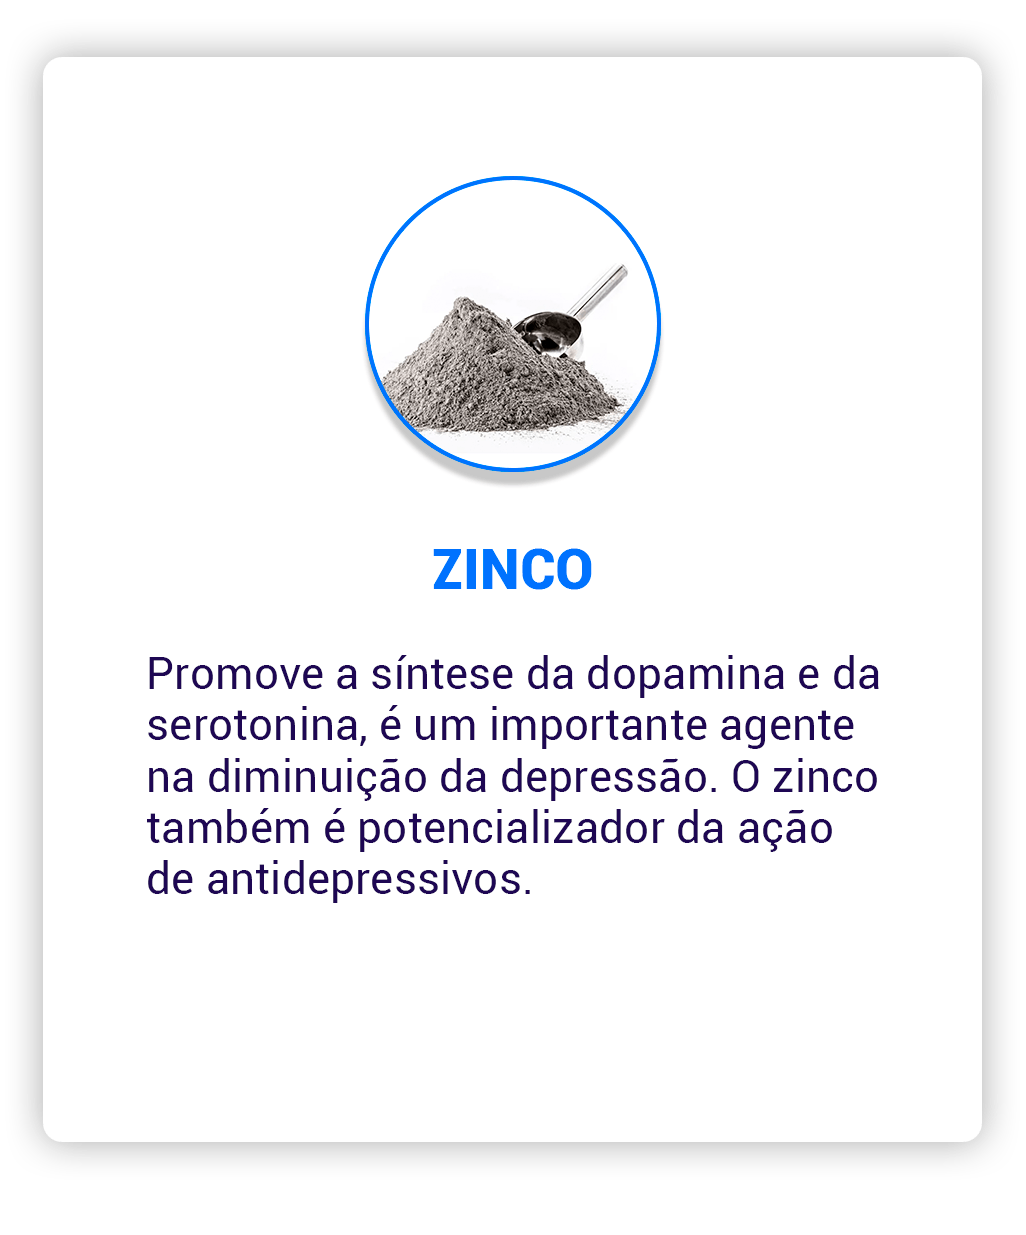 Zinco-min.png